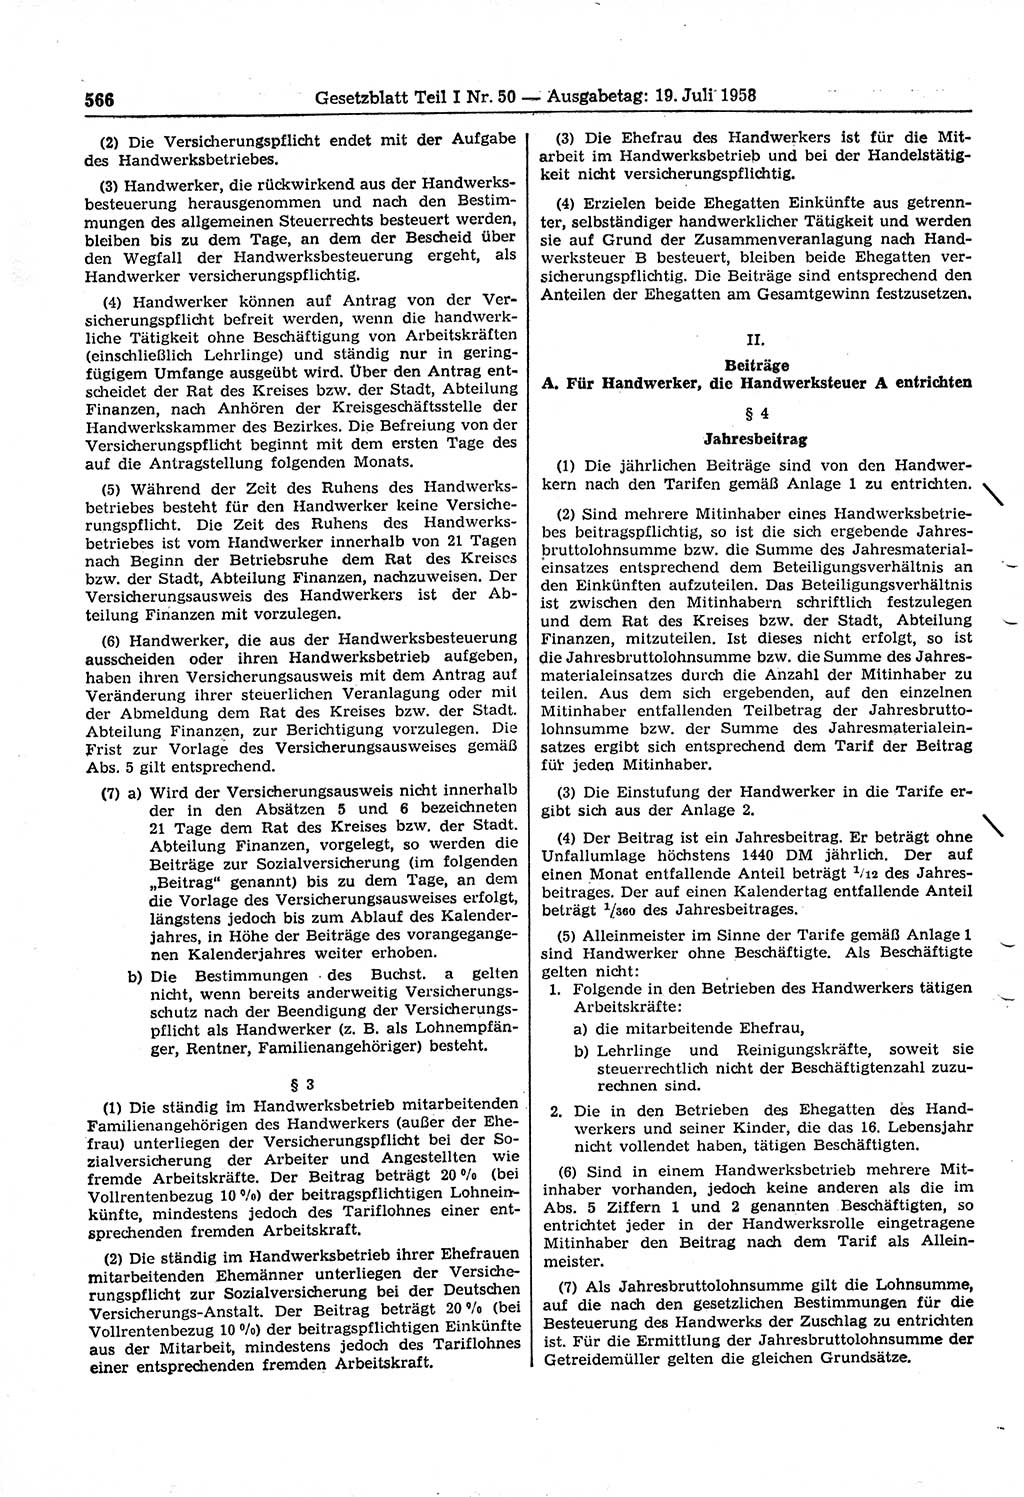 Gesetzblatt (GBl.) der Deutschen Demokratischen Republik (DDR) Teil Ⅰ 1958, Seite 566 (GBl. DDR Ⅰ 1958, S. 566)